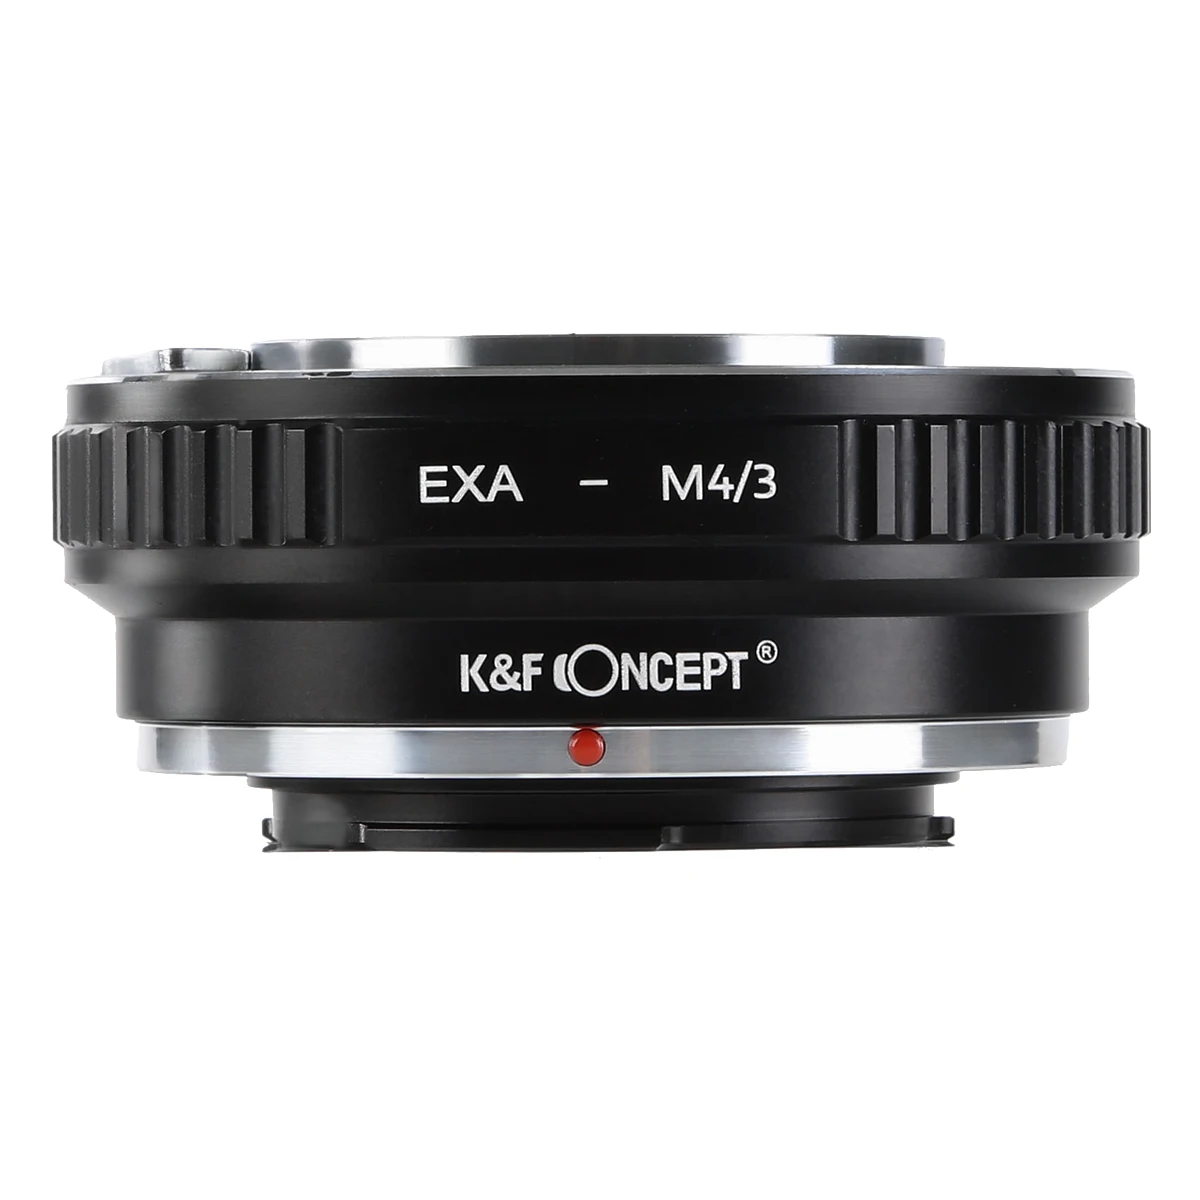 

K&F Concept Lens Adapter for Exakta mount lens to Micro 4/3 MFT BMPCC OM-D G3 GH2 GH4 E-M5 E-M10